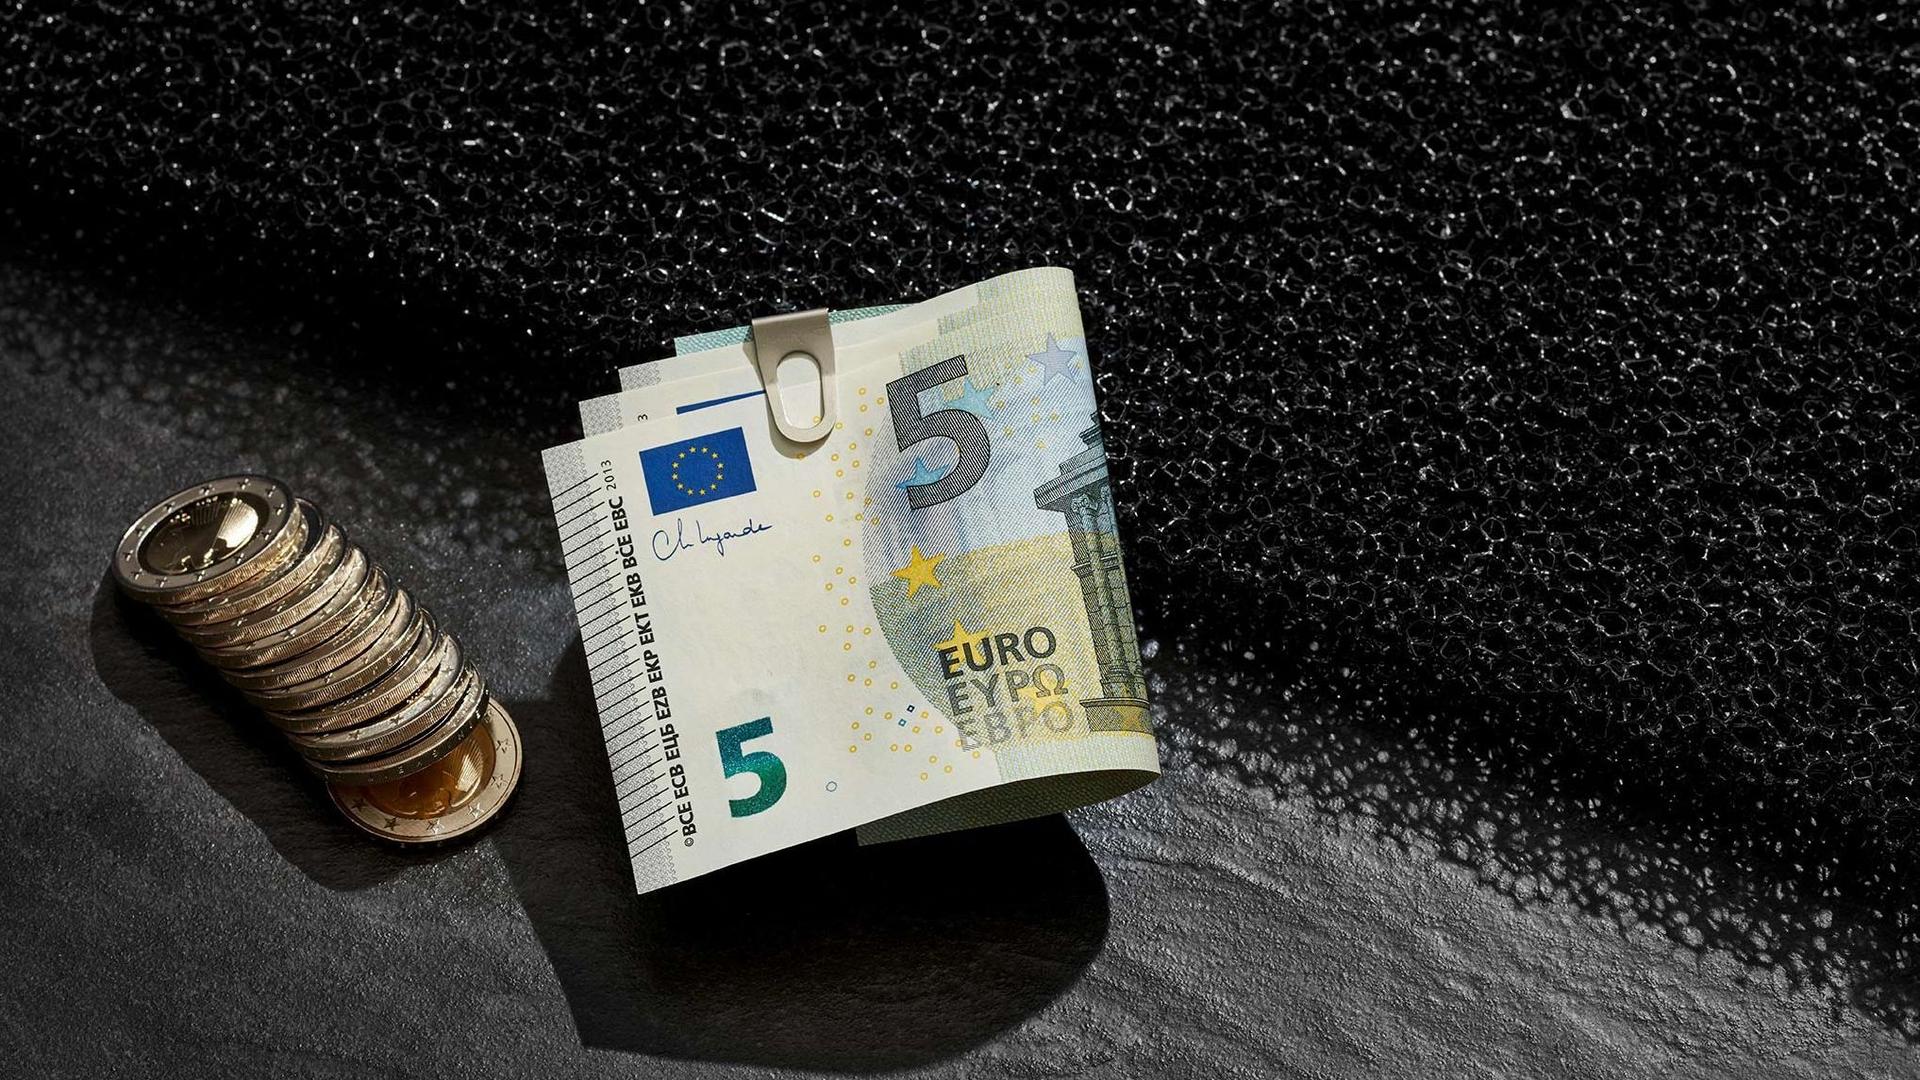 Inszeniertes Stillleben mit Eurogeldscheinen in einer Geldklammer und aufgereihten Münzen daneben. Sie liegen auf einem dunklen Untergrund.